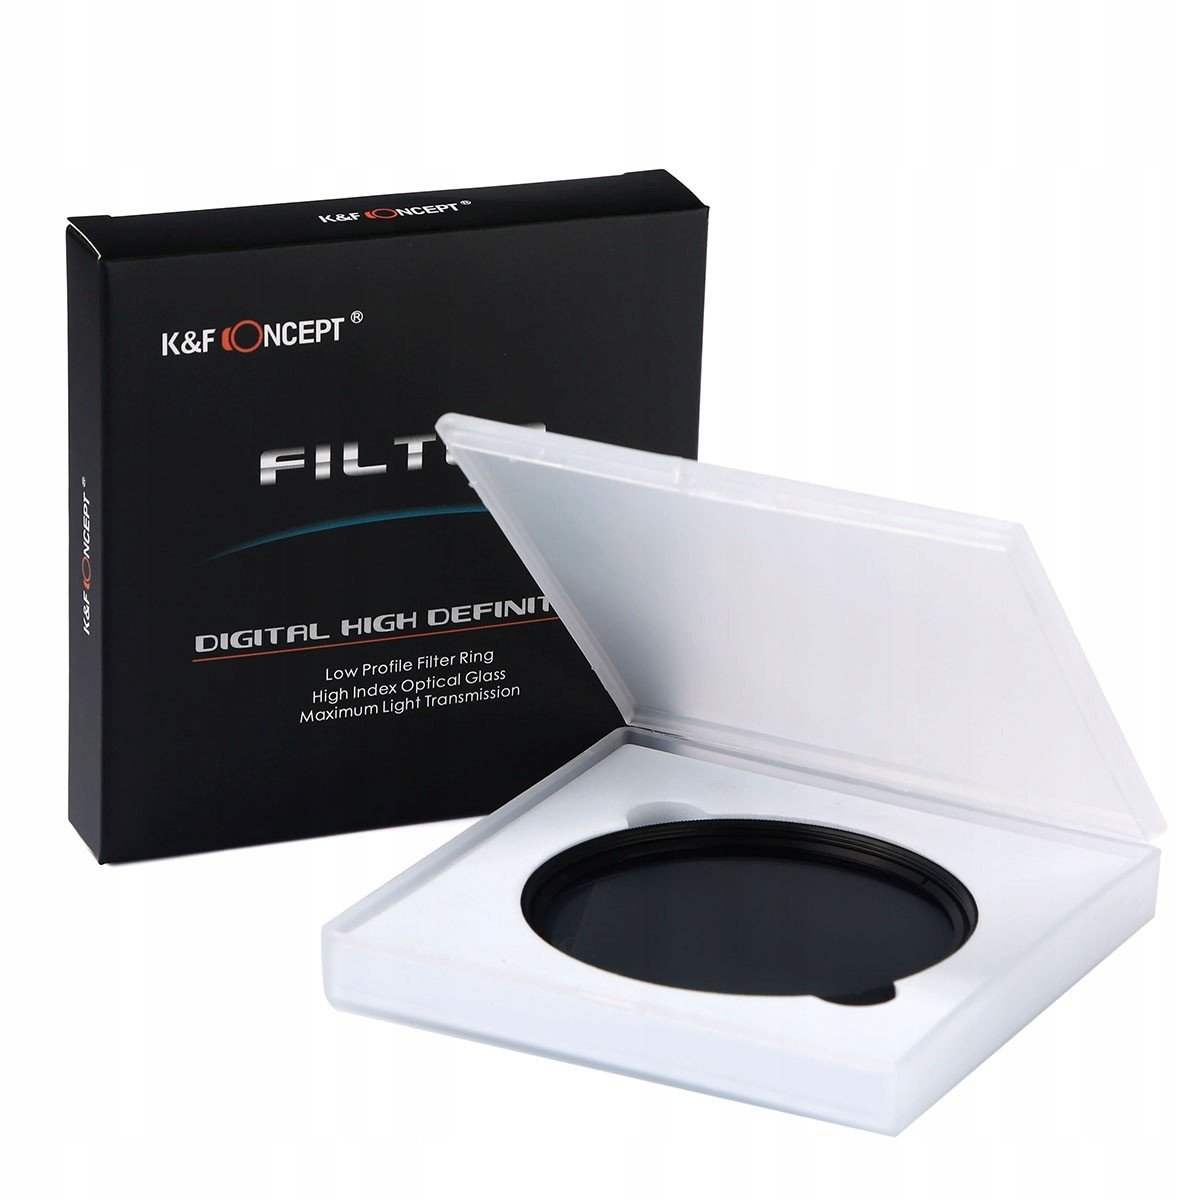 K&f Concept Nd filtr šedý 67mm Fader ND2-400